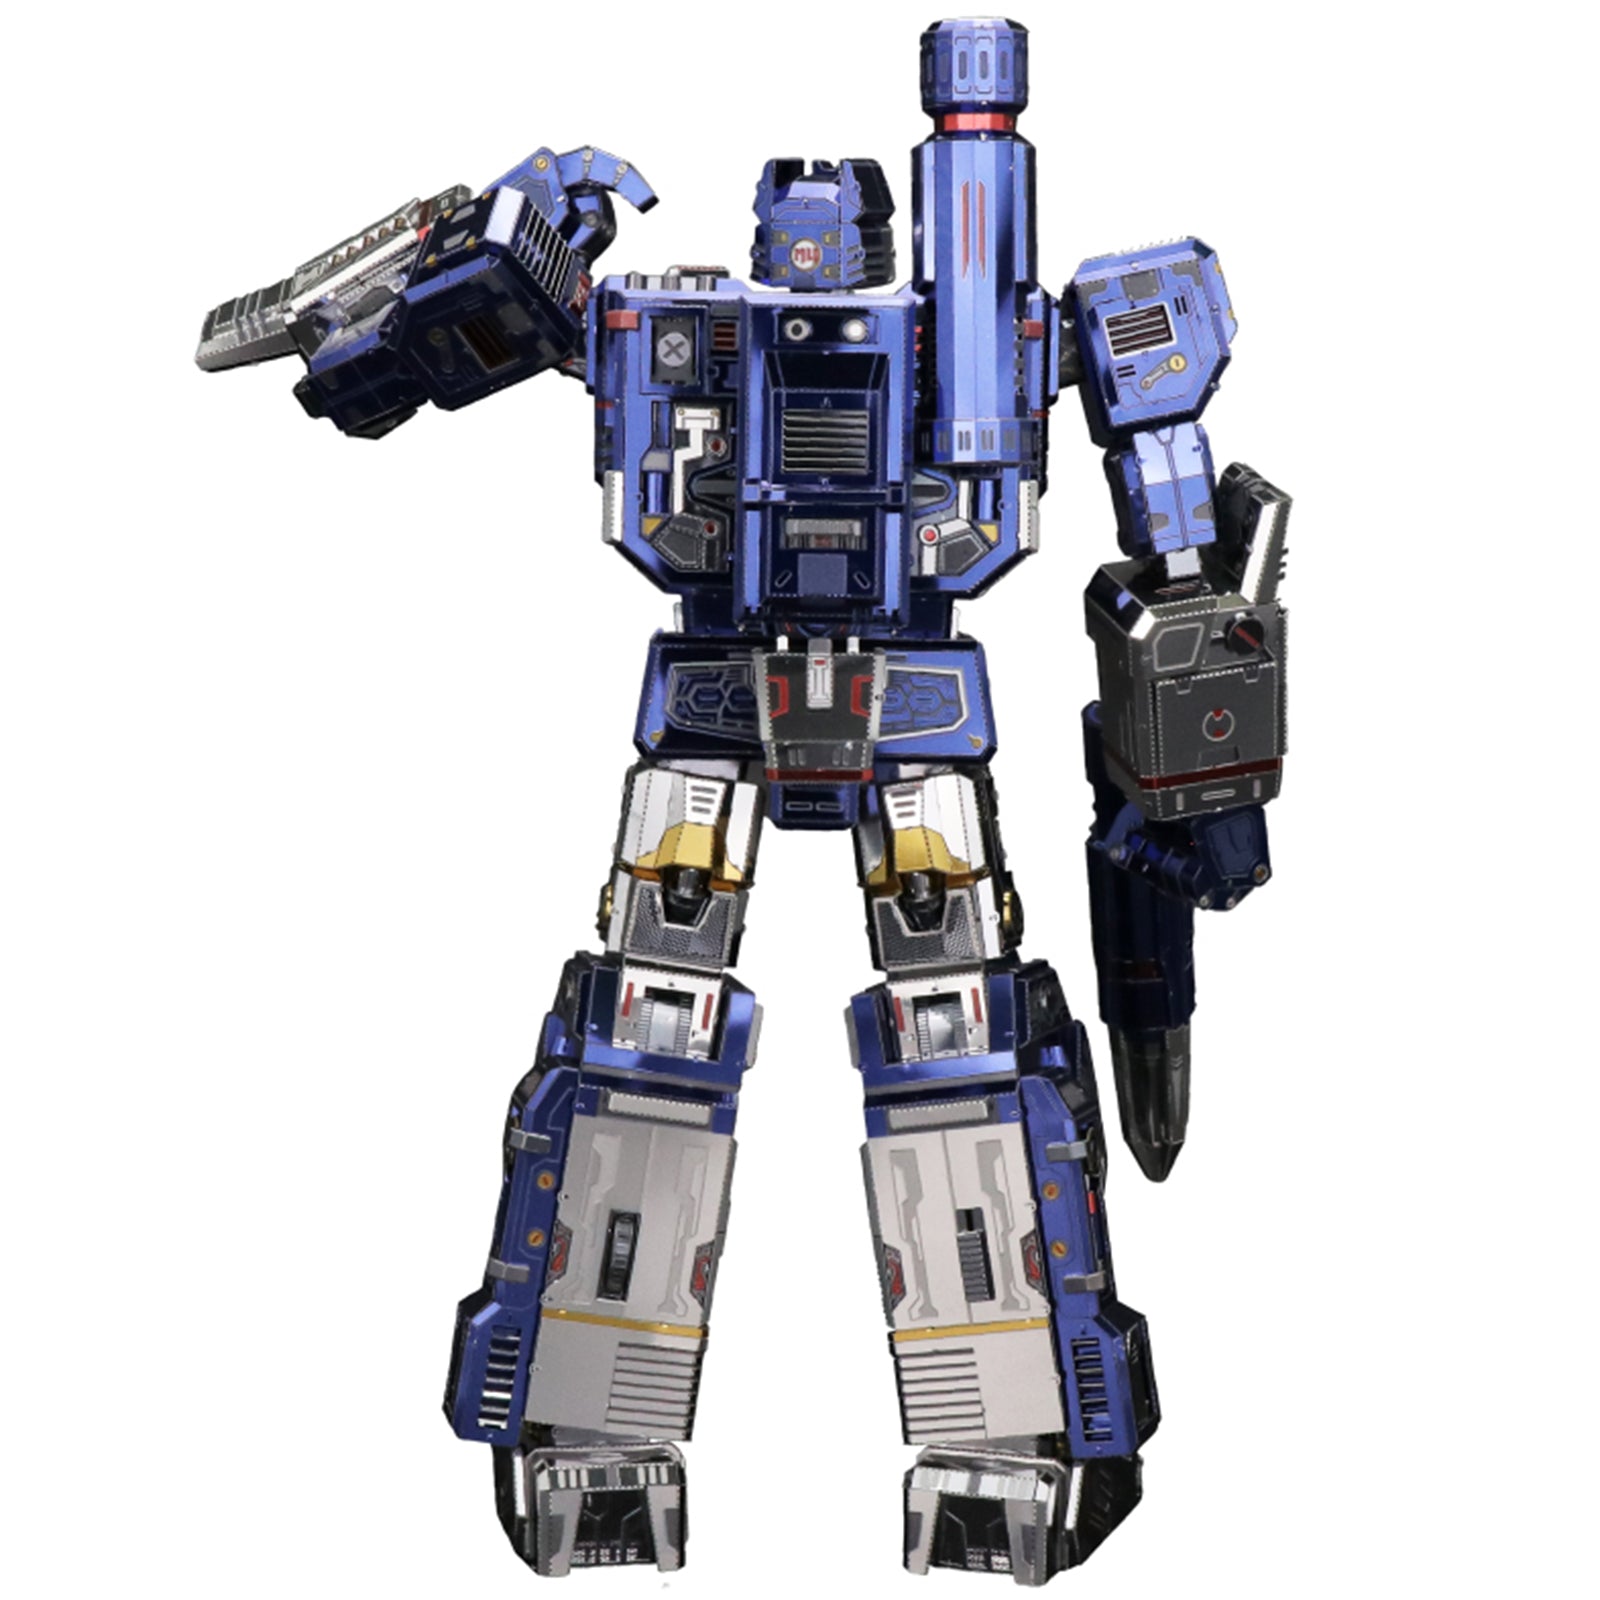 Transformers: Generation 1 - 24cm Soundwave and the Decepticon Mini-Cassettes 3D Metal Puzzle Model Kit